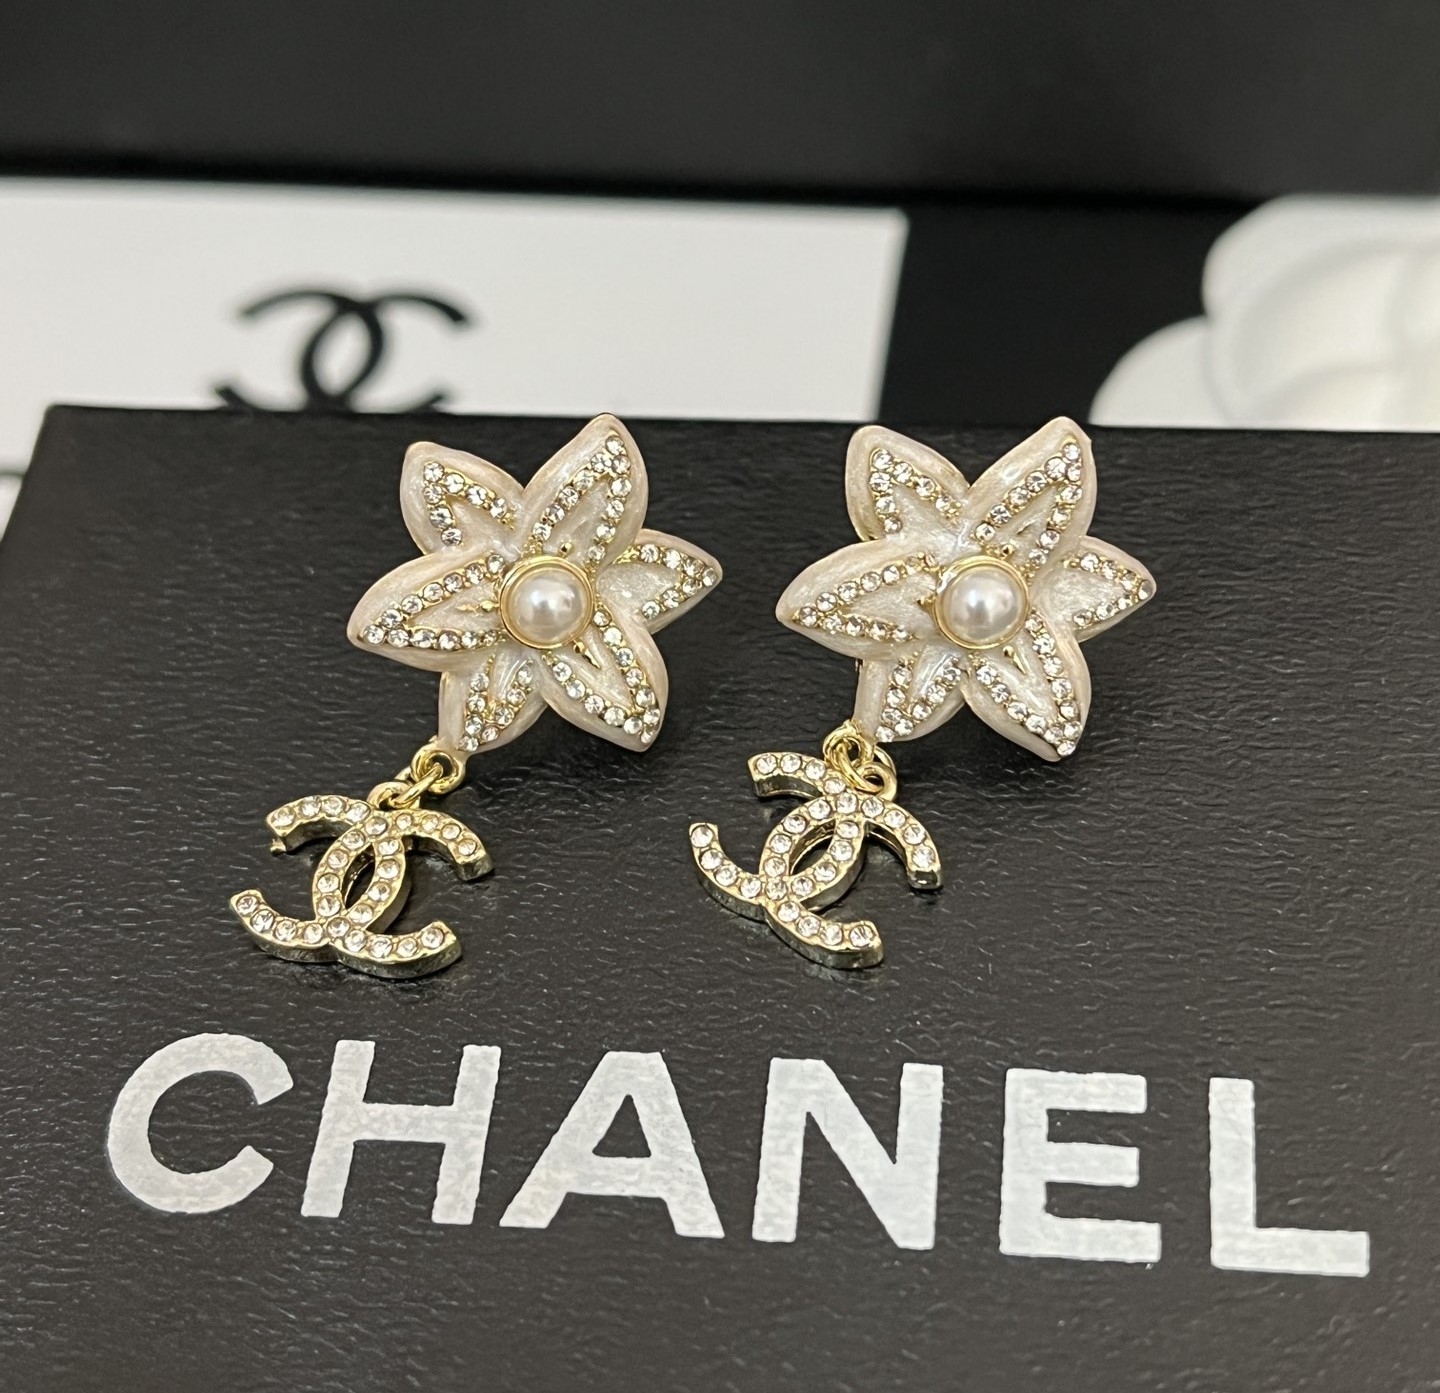 A953 Chanel earrings